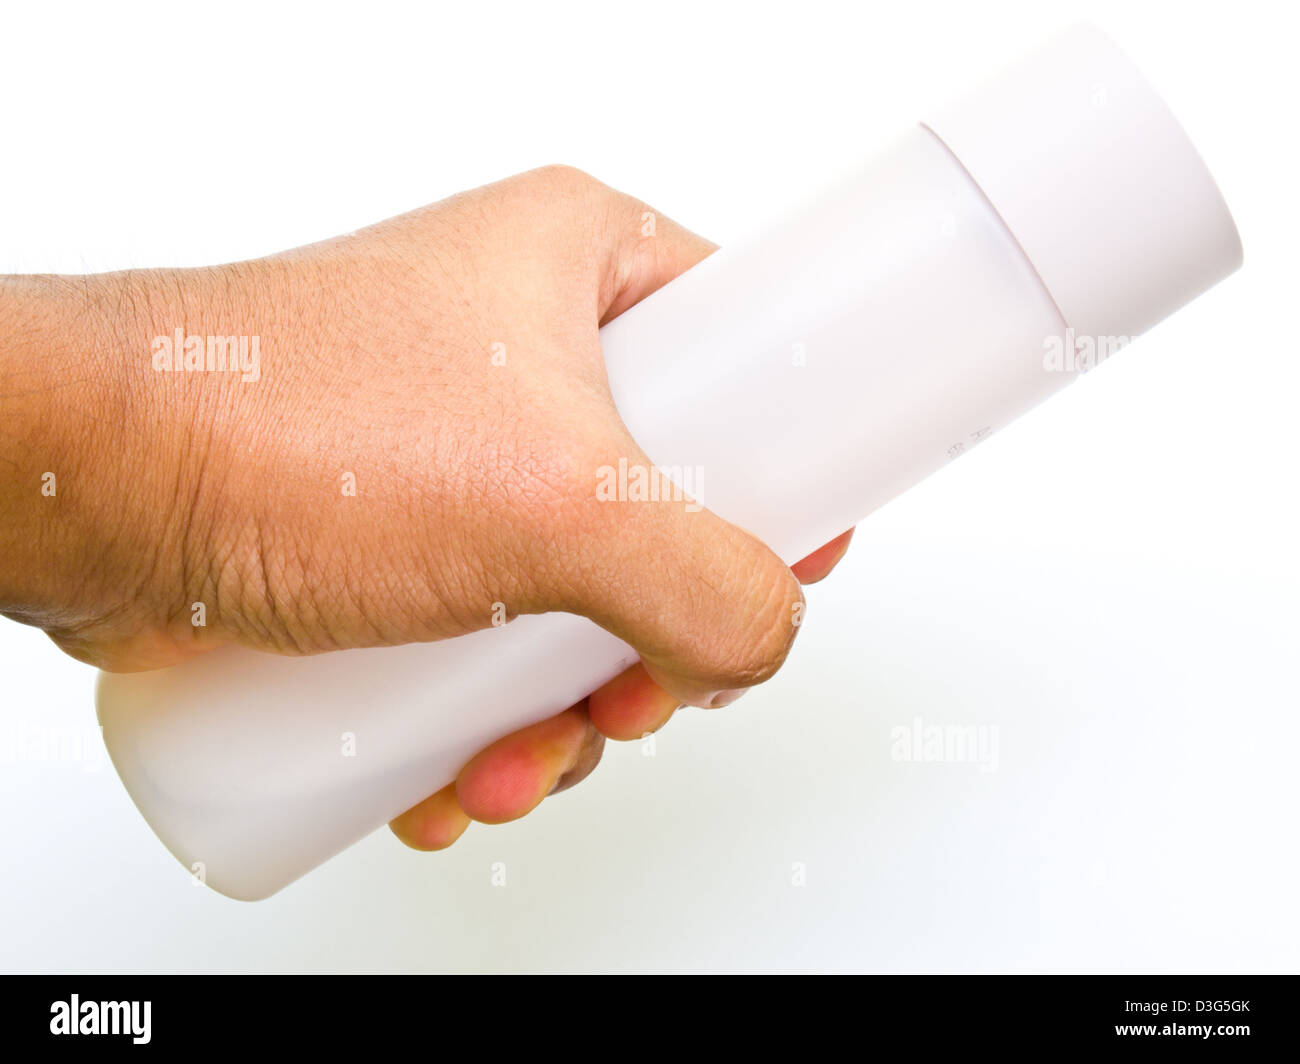 Une bouteille en plastique rose à la main tenir isolé sur fond blanc Banque D'Images